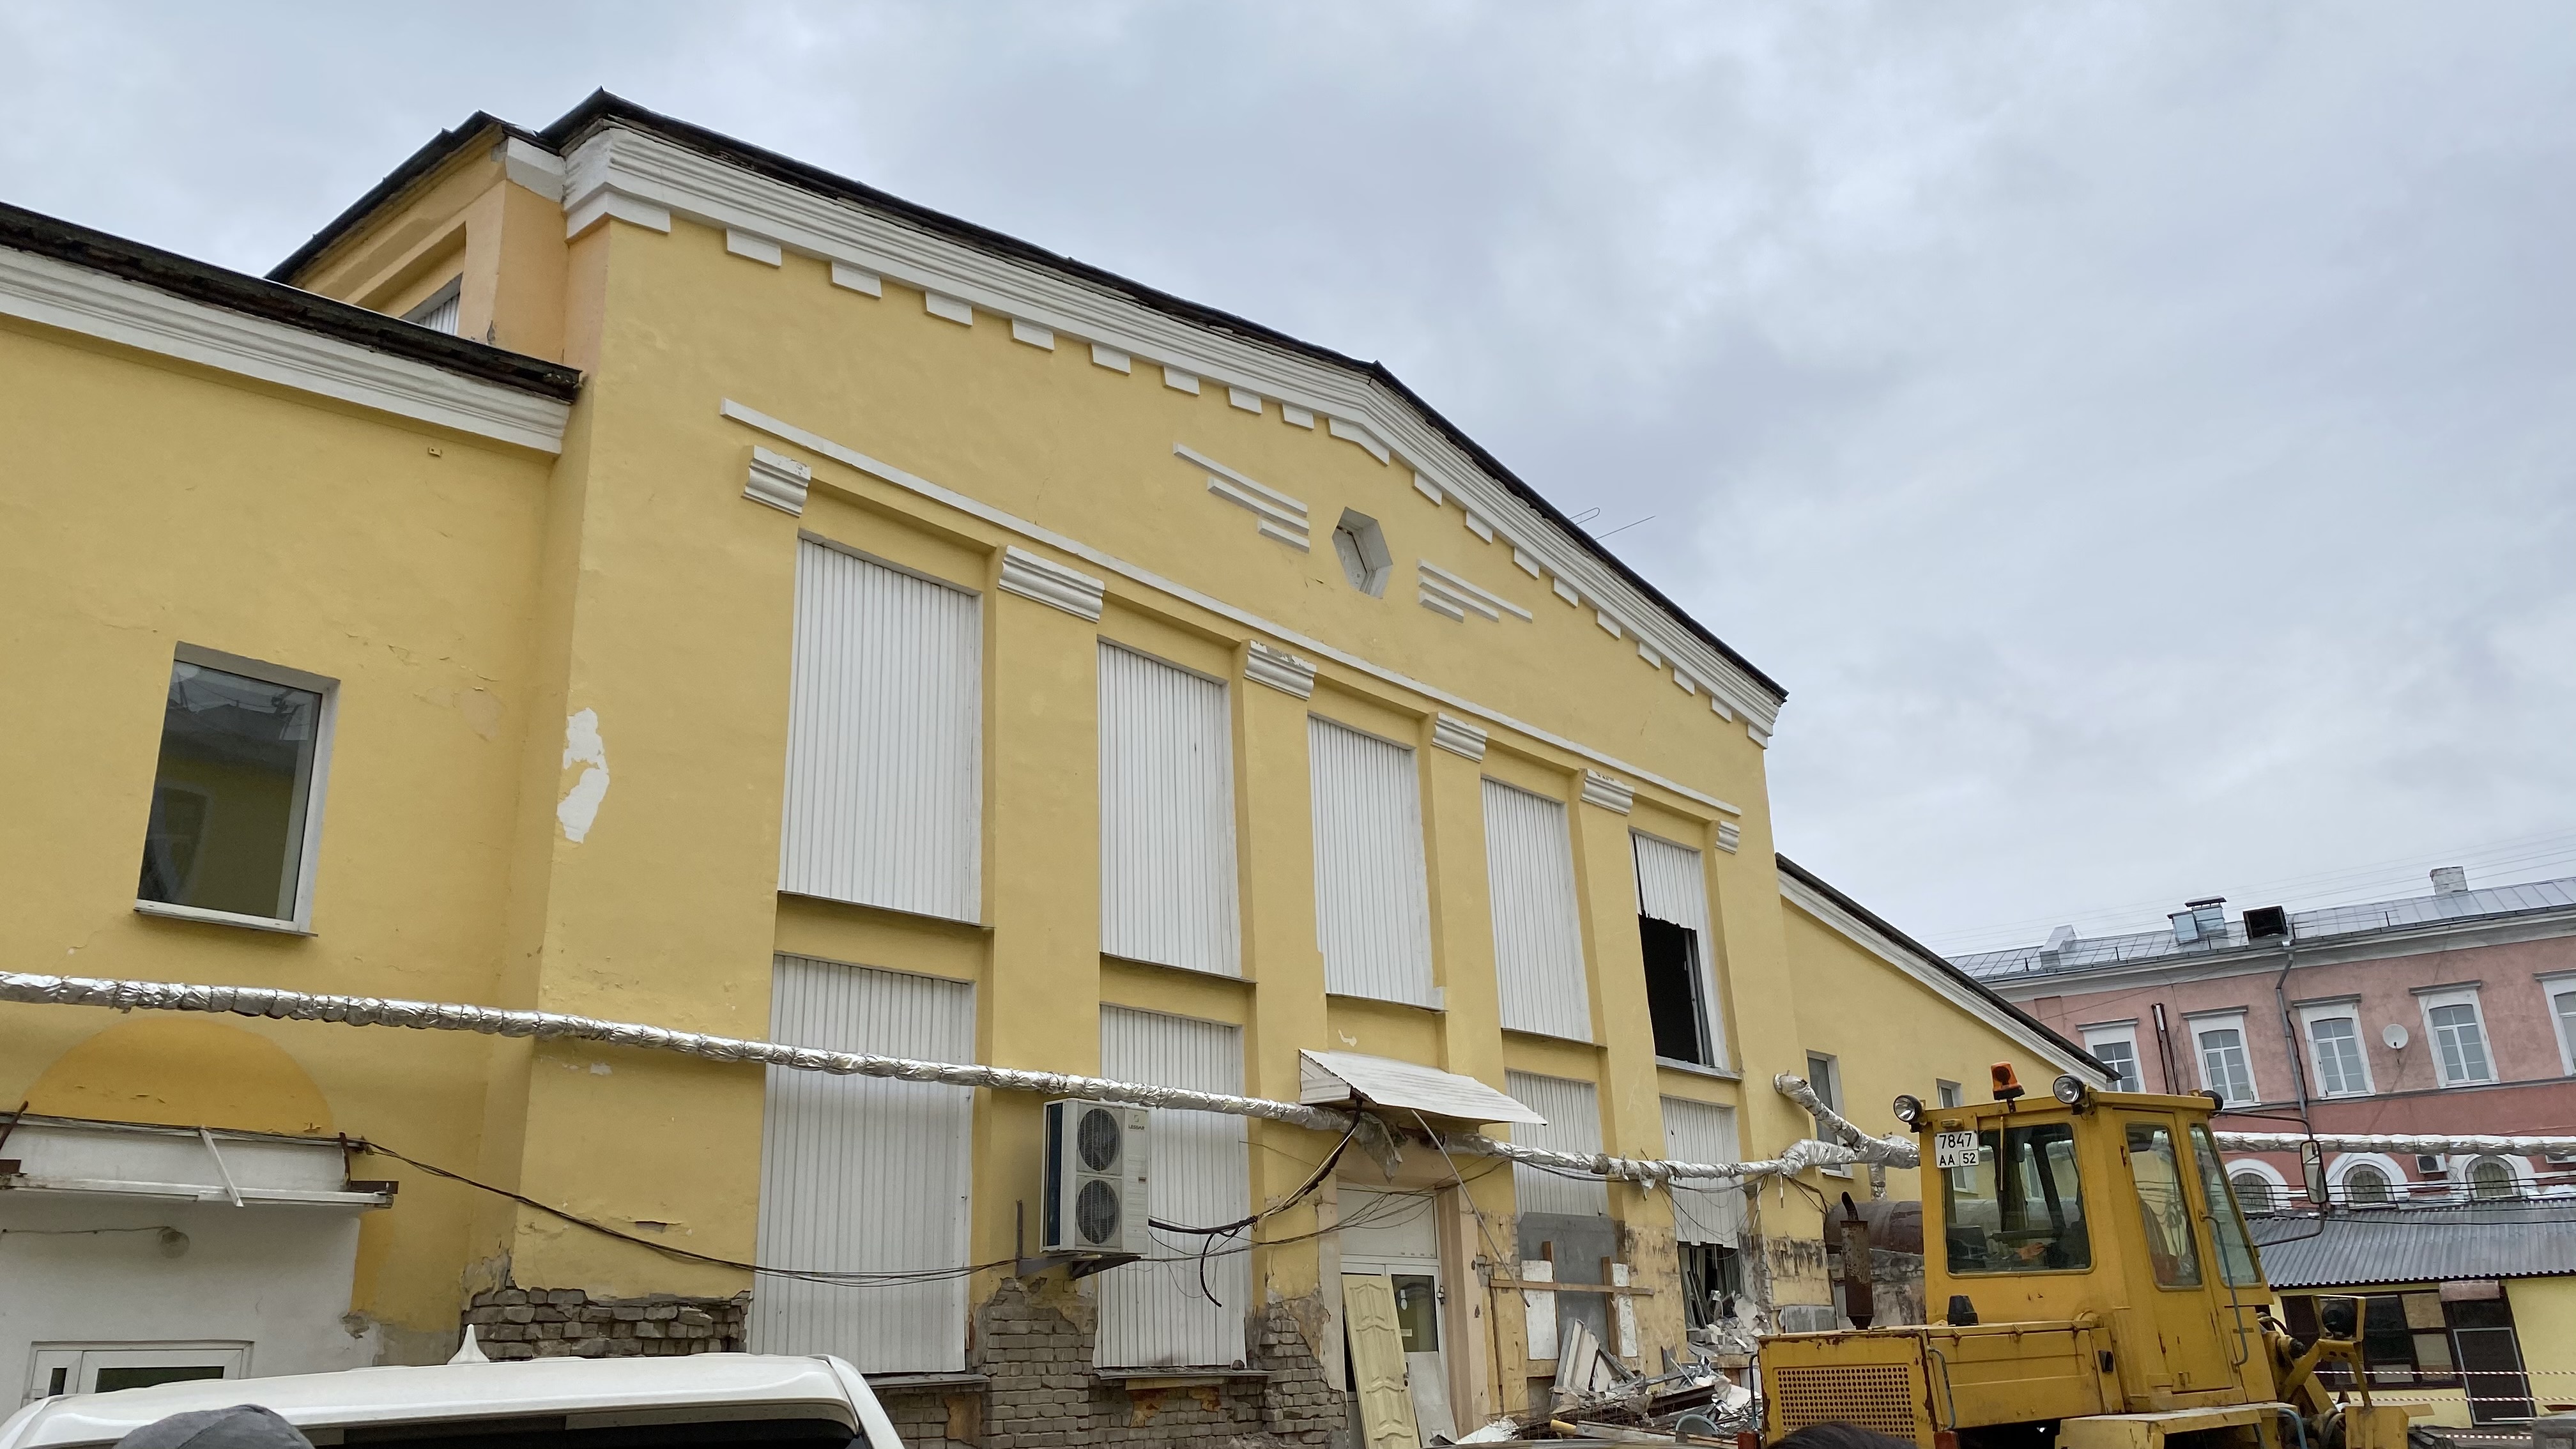 Нижегородские власти запретили строительство пятиэтажного ТЦ  на месте  Мытного рынка - фото 2